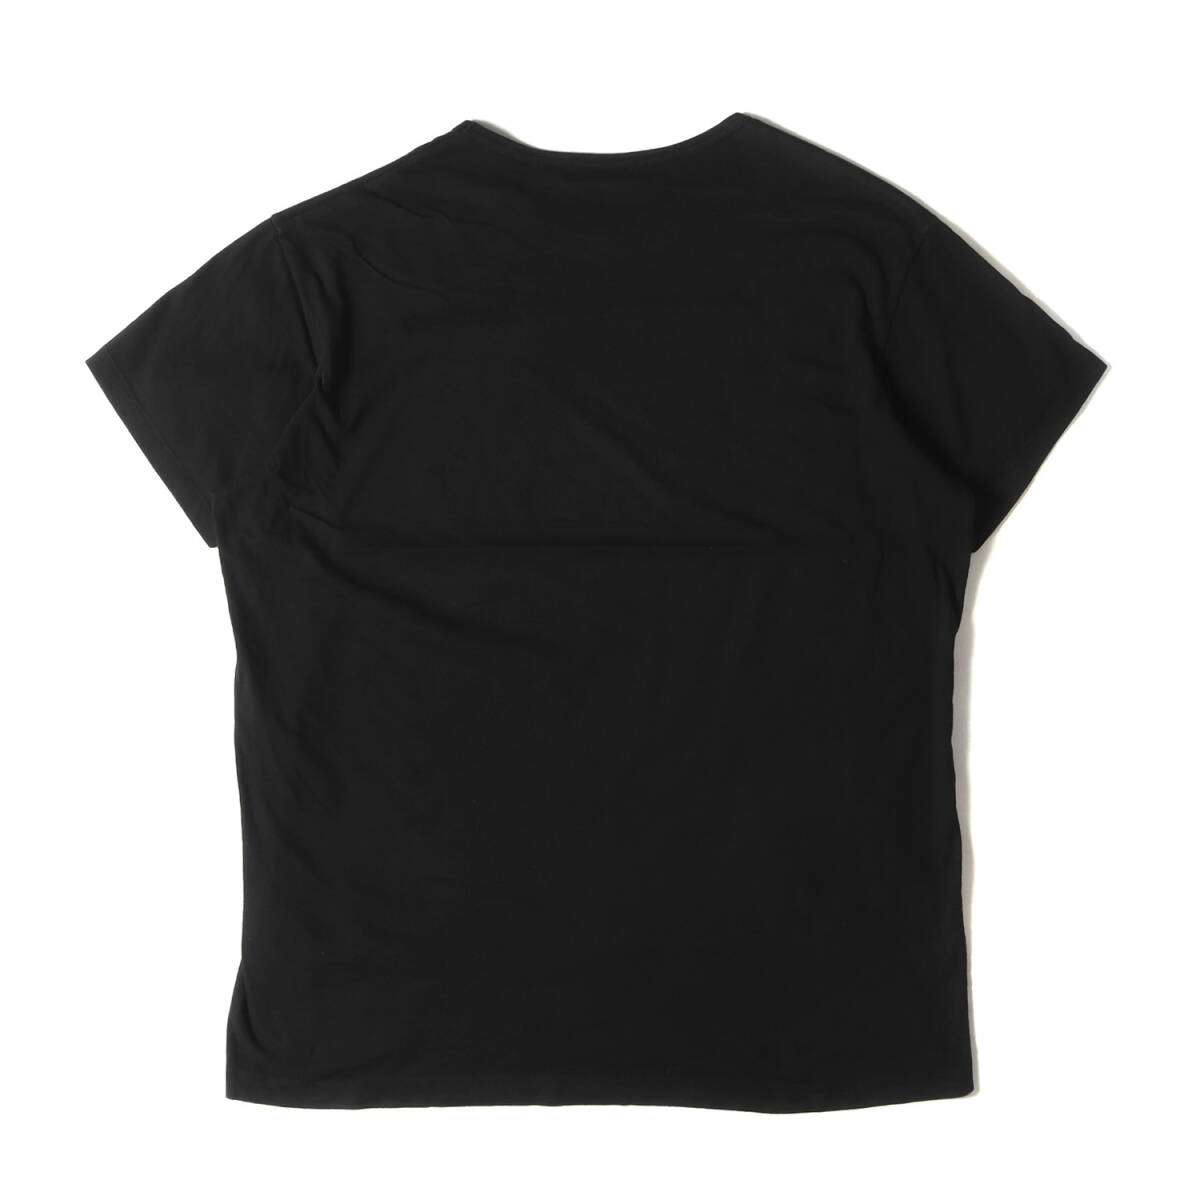 Yohji Yamamoto(Ys) ヨウジヤマモト Tシャツ サイズ:3 18SS グラフィック ロゴ バインダーネック 半袖Tシャツ ブラック 黒 日本製_画像2